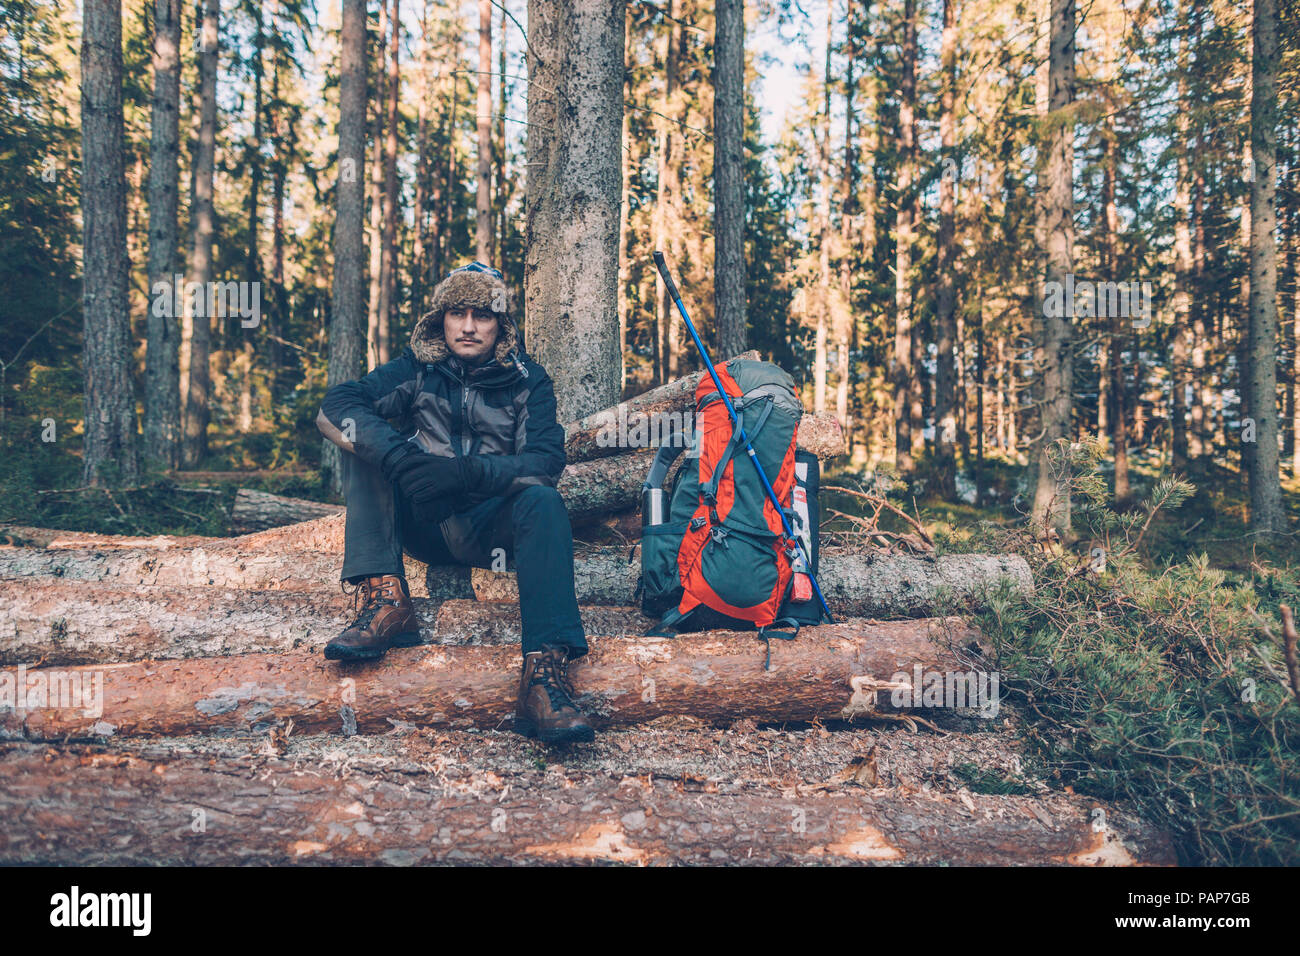 Sweden, Sodermanland, backpacker resting in remote landscape Stock Photo